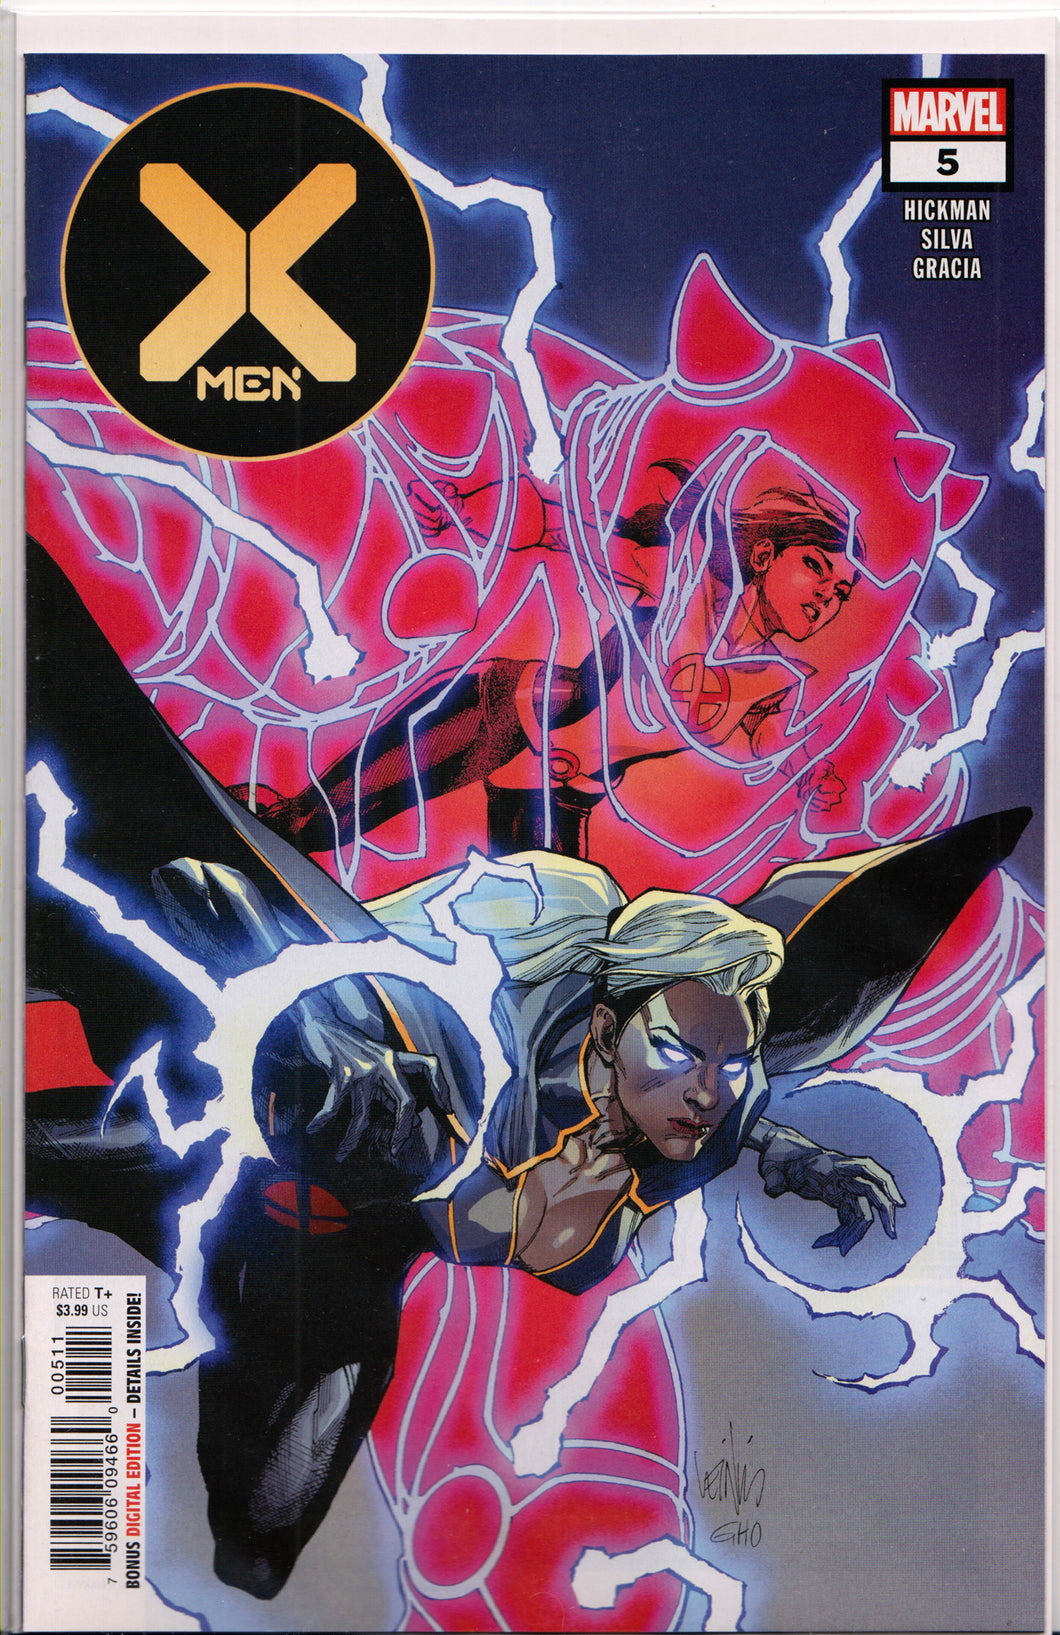 X-MEN #5 COMIC BOOK (1ST PRINT) ~ HICKMAN~ Marvel Comics